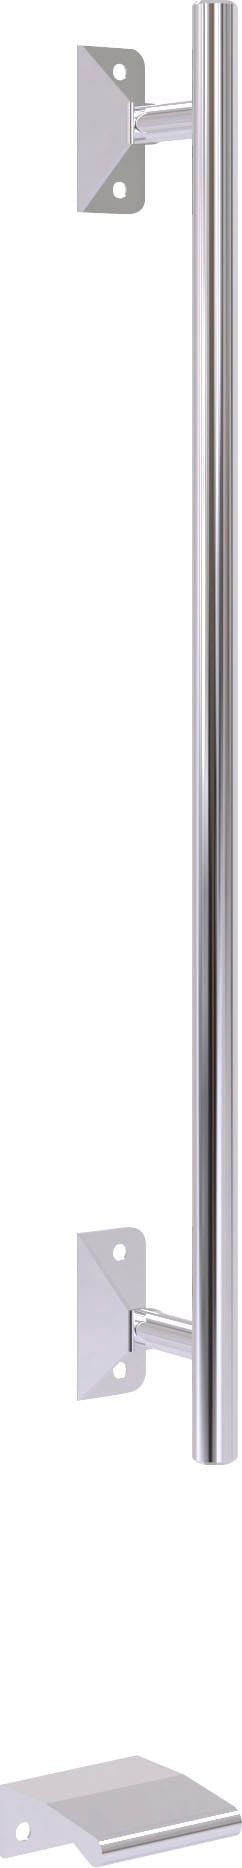 WIEMANN Falttürenschrank »Loft, in stilvoller Optik, Made in Germany«, widerstandsfähige Glasfronten, geräuscharme Türen, mit Panoramaöffnung